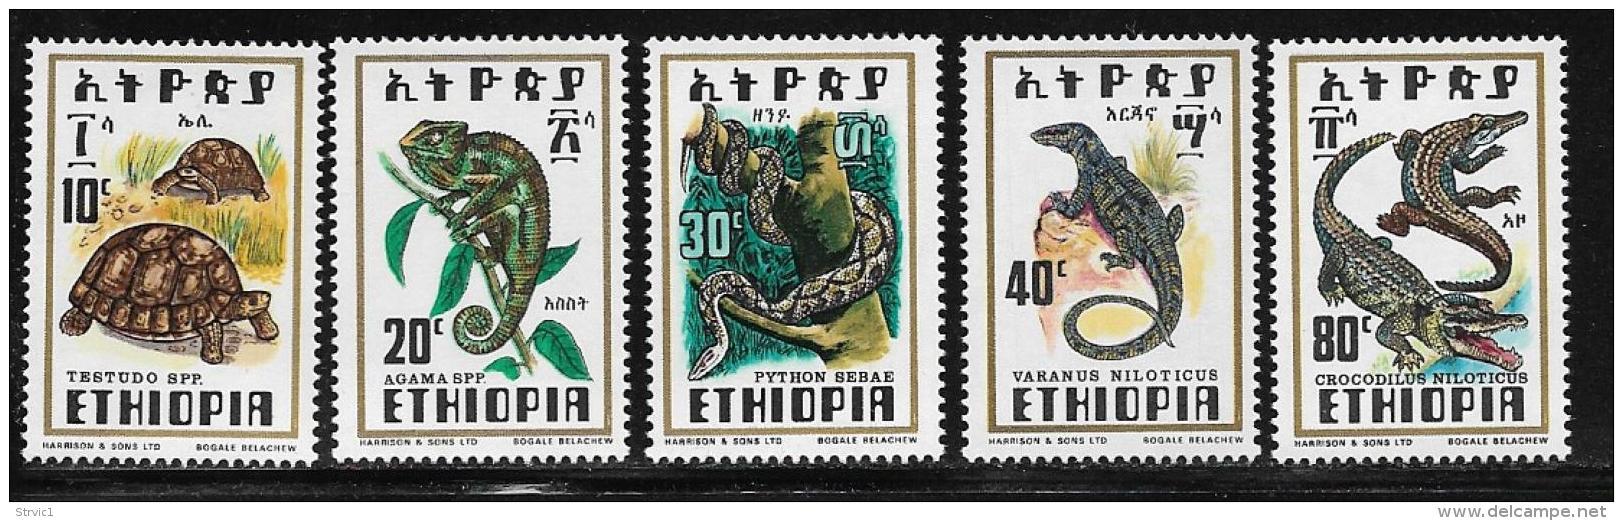 Ethiopia, Scott # 812-6 MNH Reptiles, 1976 - Ethiopia